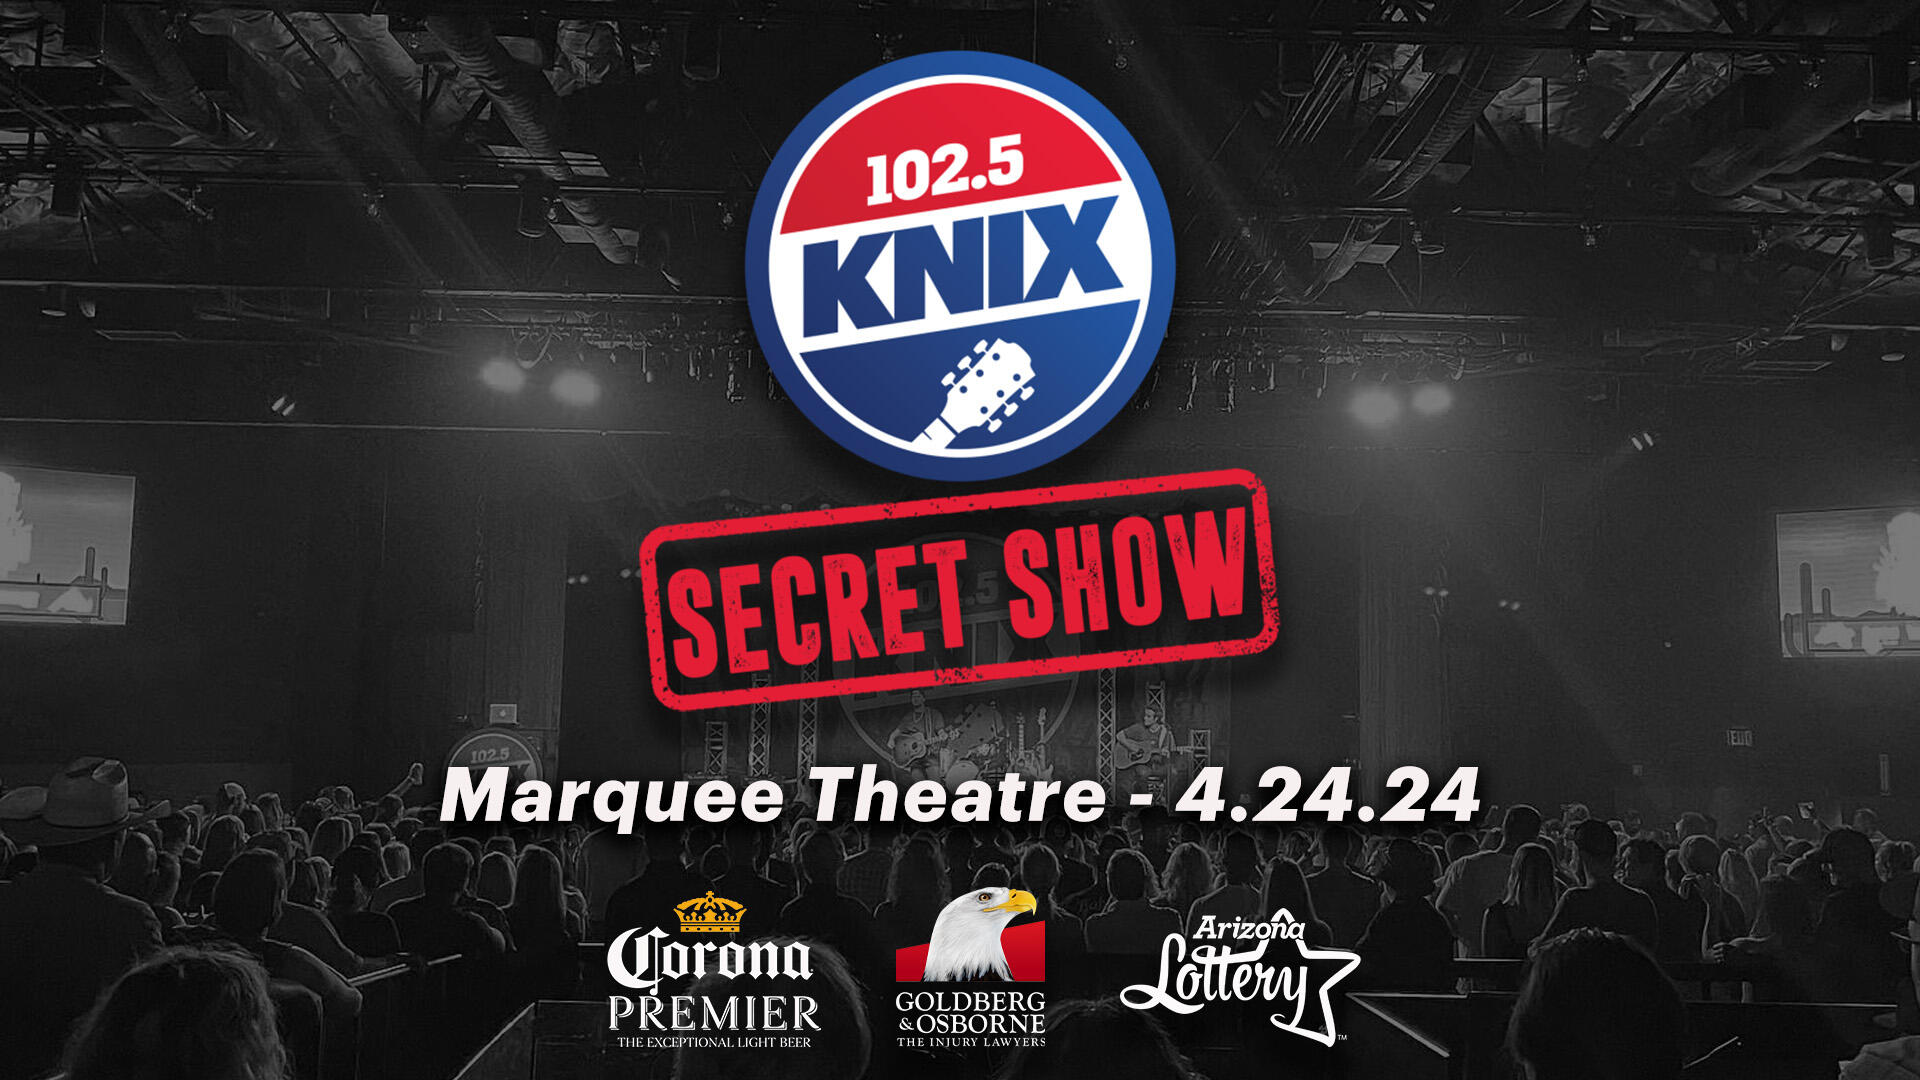 10.25 KNIX Secret Show 2019